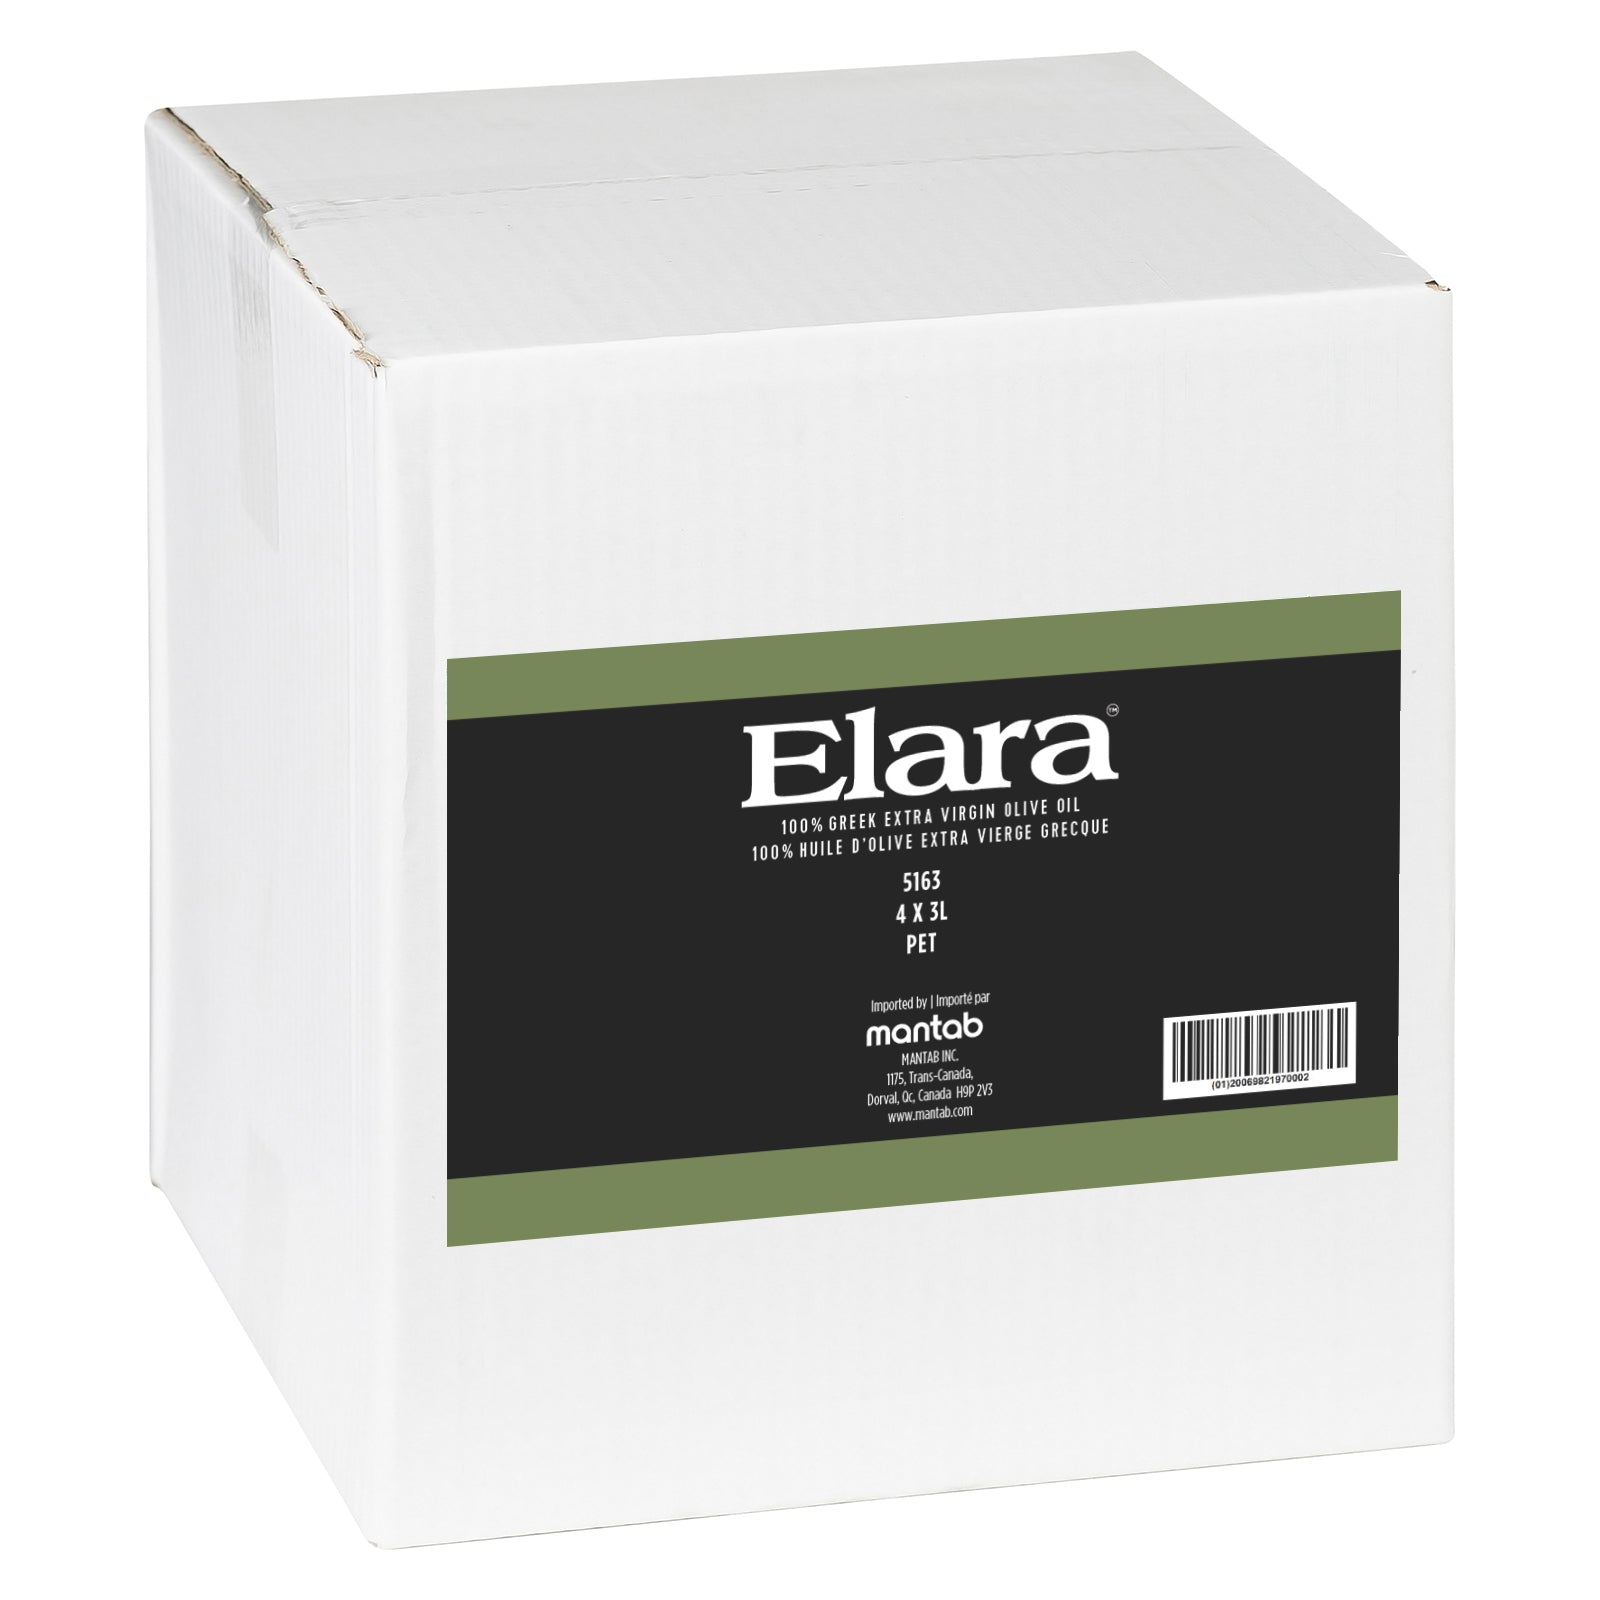 ELARA Extra virgin olive oil - Pet jar